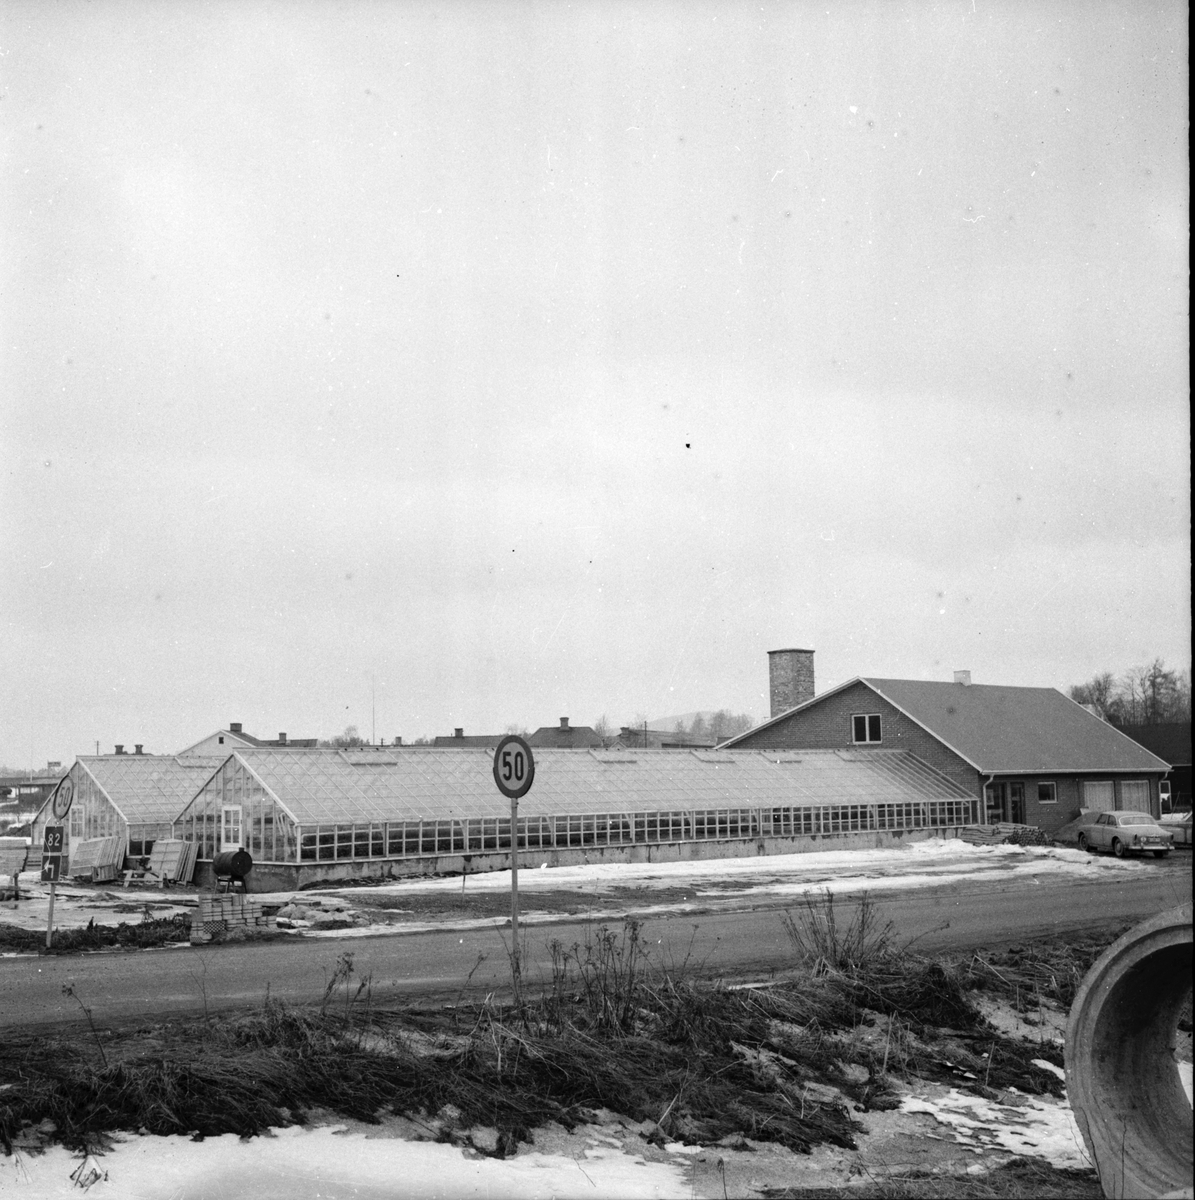 Mobackes Handelsträdgård,
4 April 1963